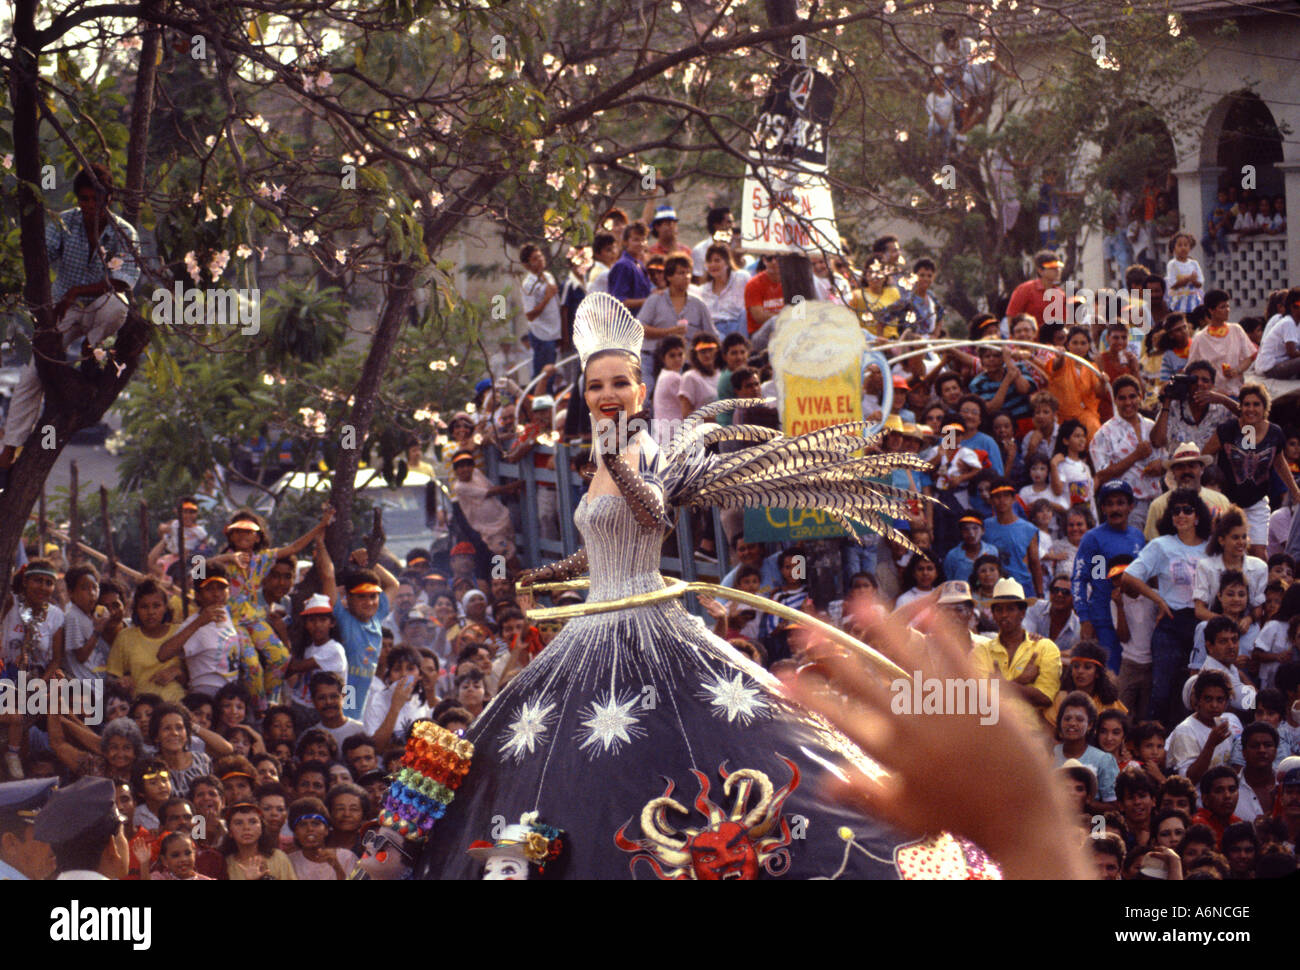 Karnevalskönigin winkt ein Zuschauer in Barranquilla Kolumbien Südamerika Stockfoto